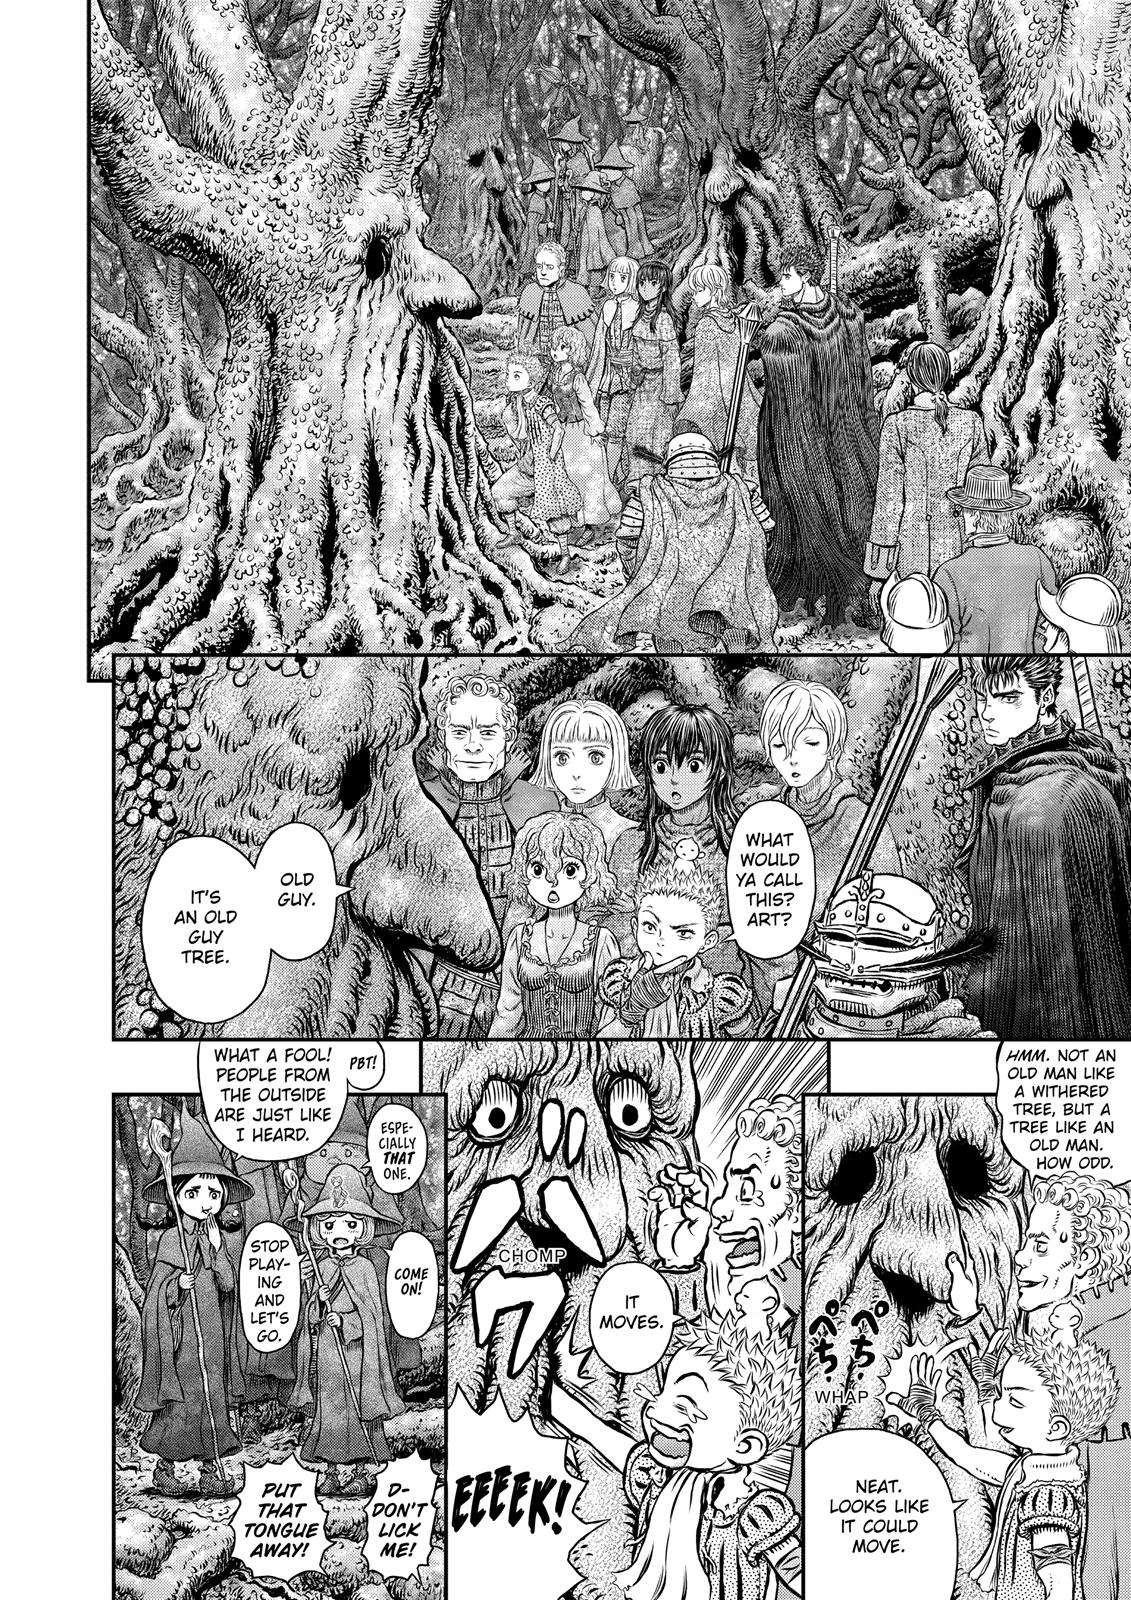 Berserk Manga Chapter 344 image 11